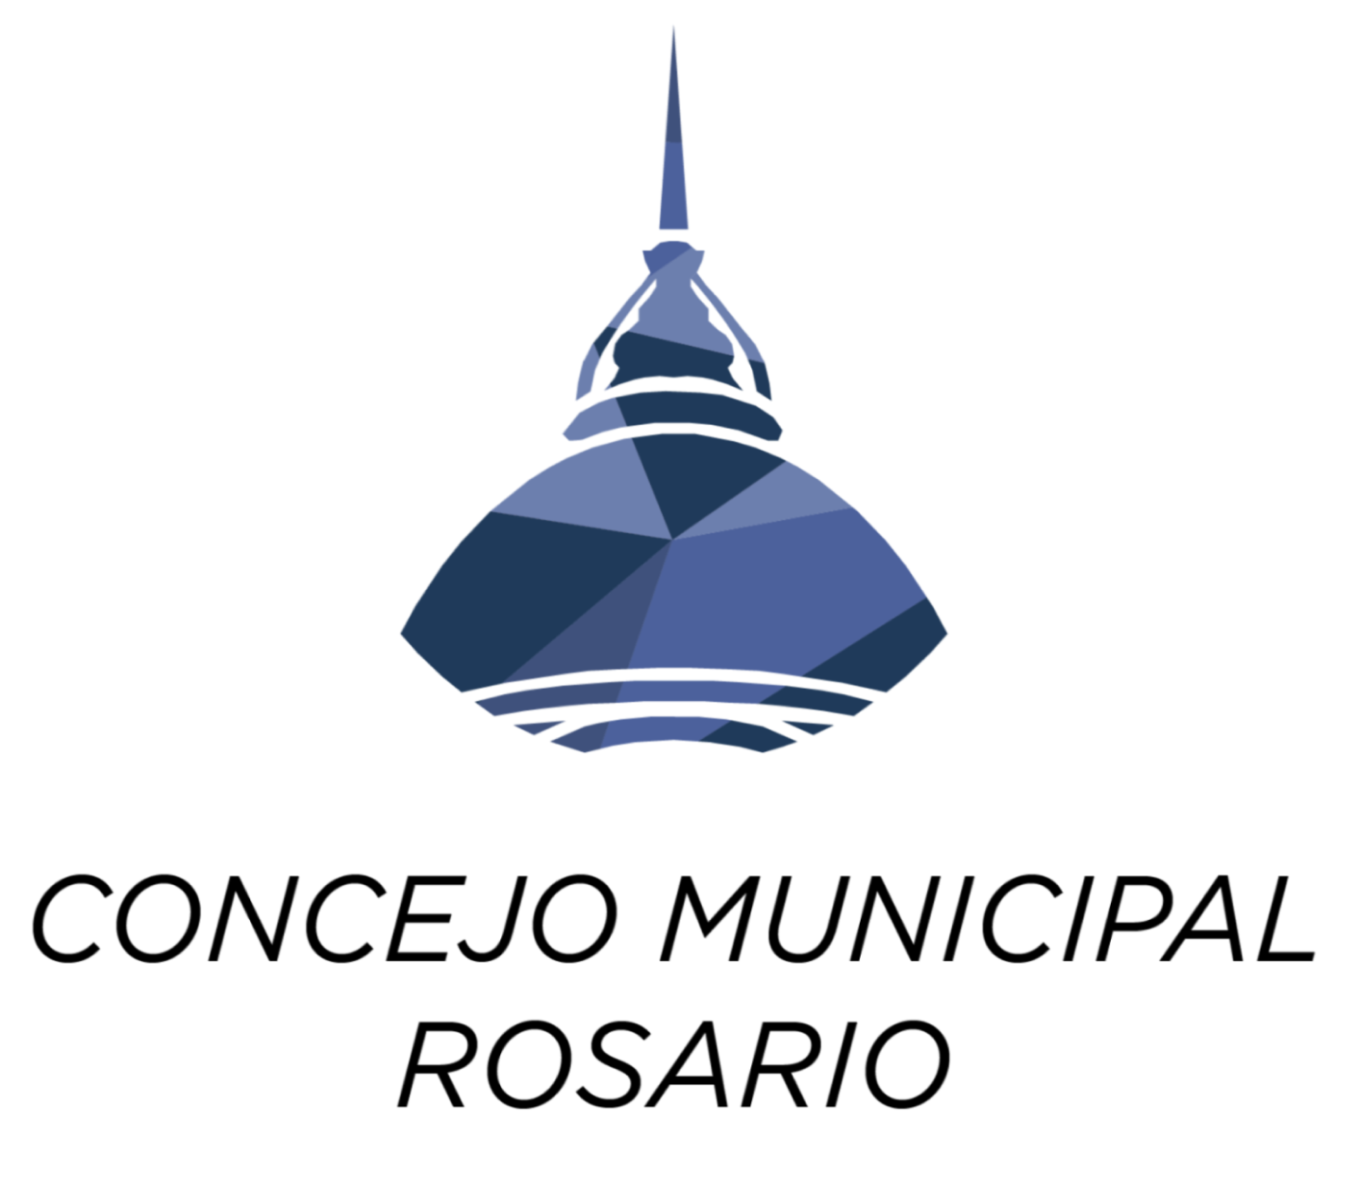 Honorable Concejo Municipal de Rosario